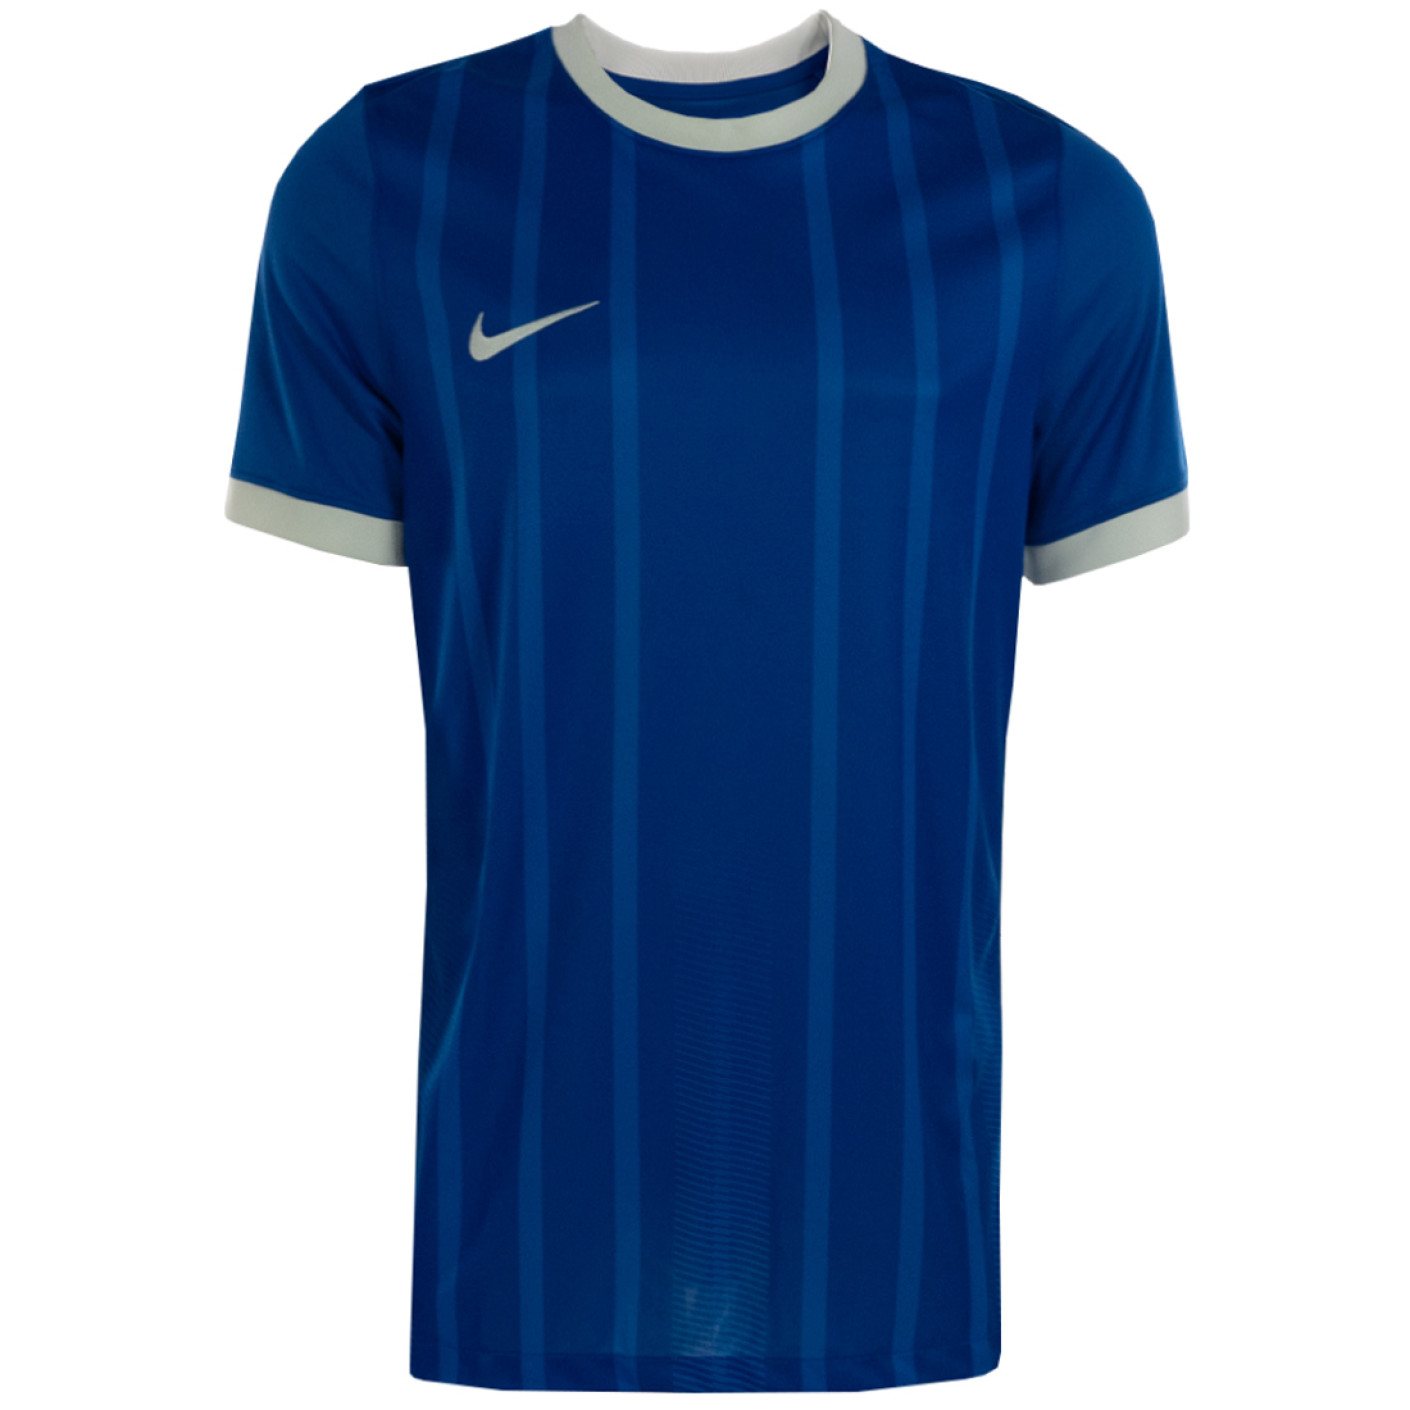 Nike Dry Classic GX1 Voetbalshirt Blauw Wit